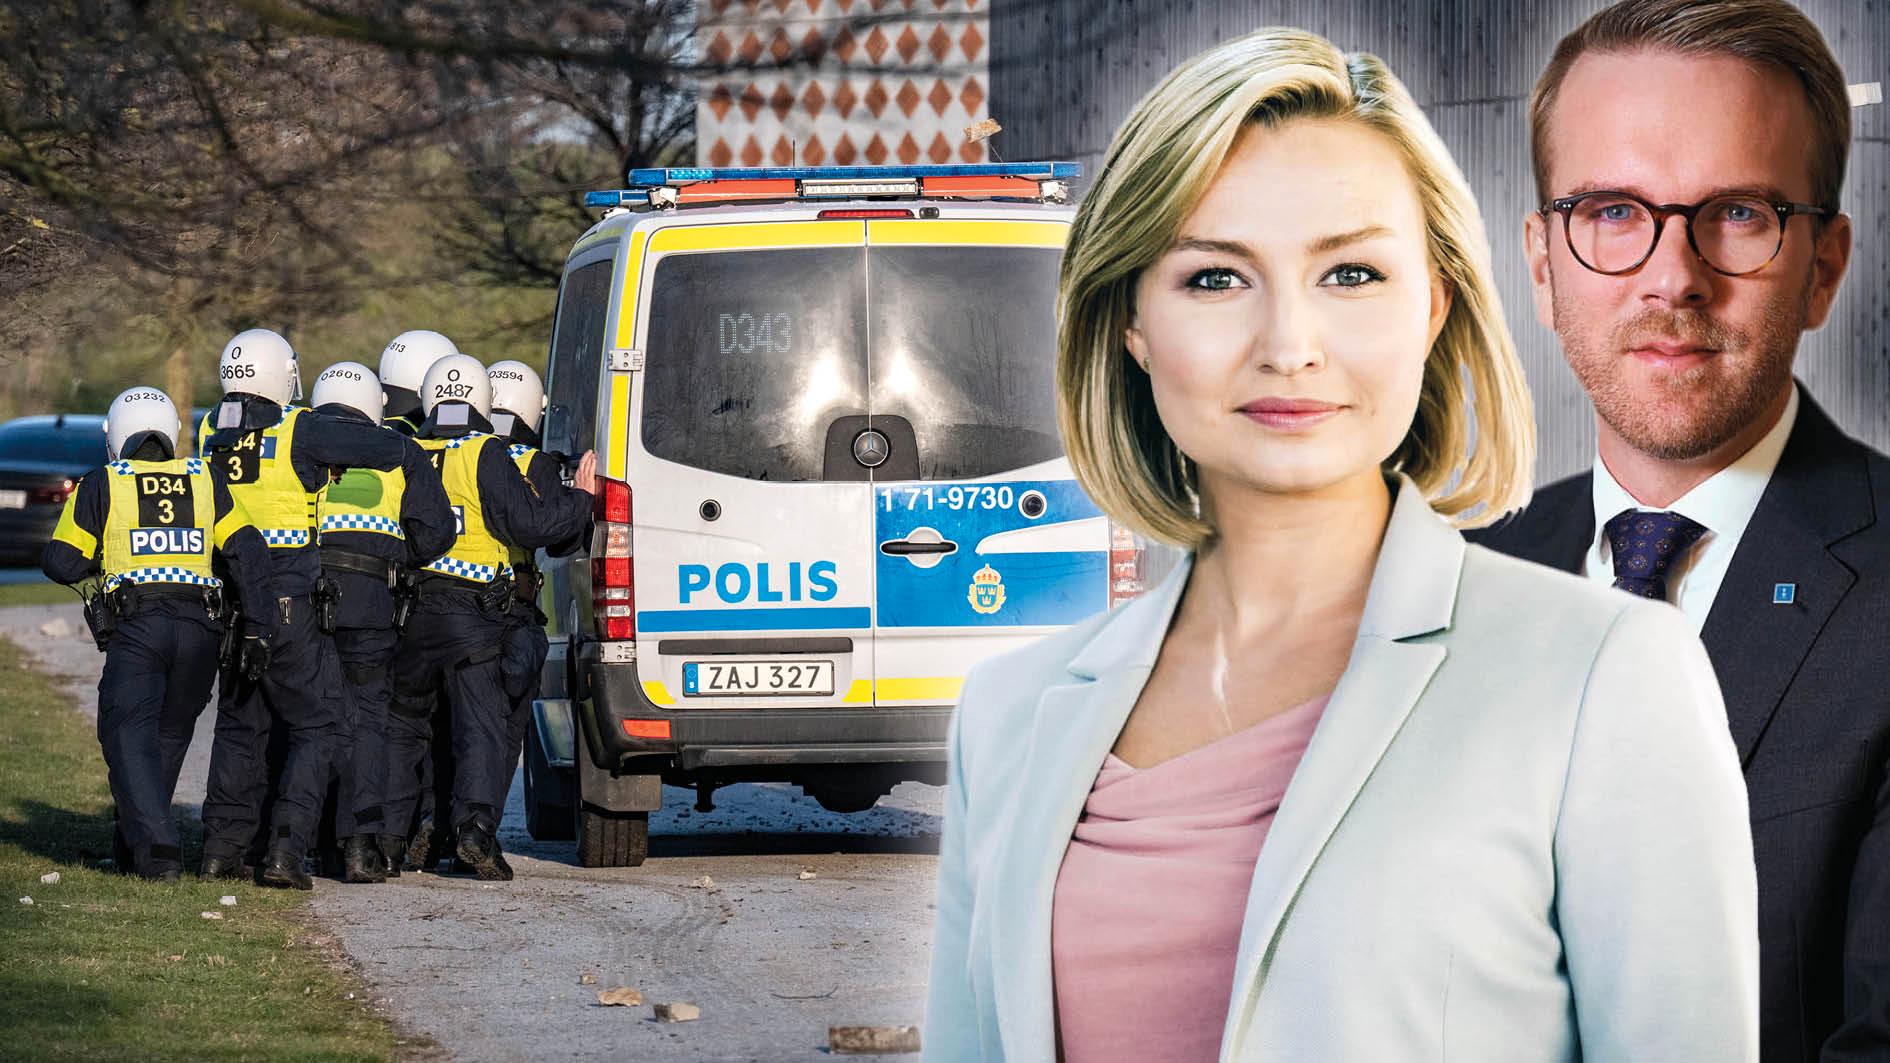 Kristdemokraterna står bakom svensk polis, som just nu behöver samhällets fulla stöd. I de drabbade områdena kan det inte vara minsta motståndets lag som råder, utan Sveriges rikes lag, skriver Ebba Busch och Andreas Carlson.